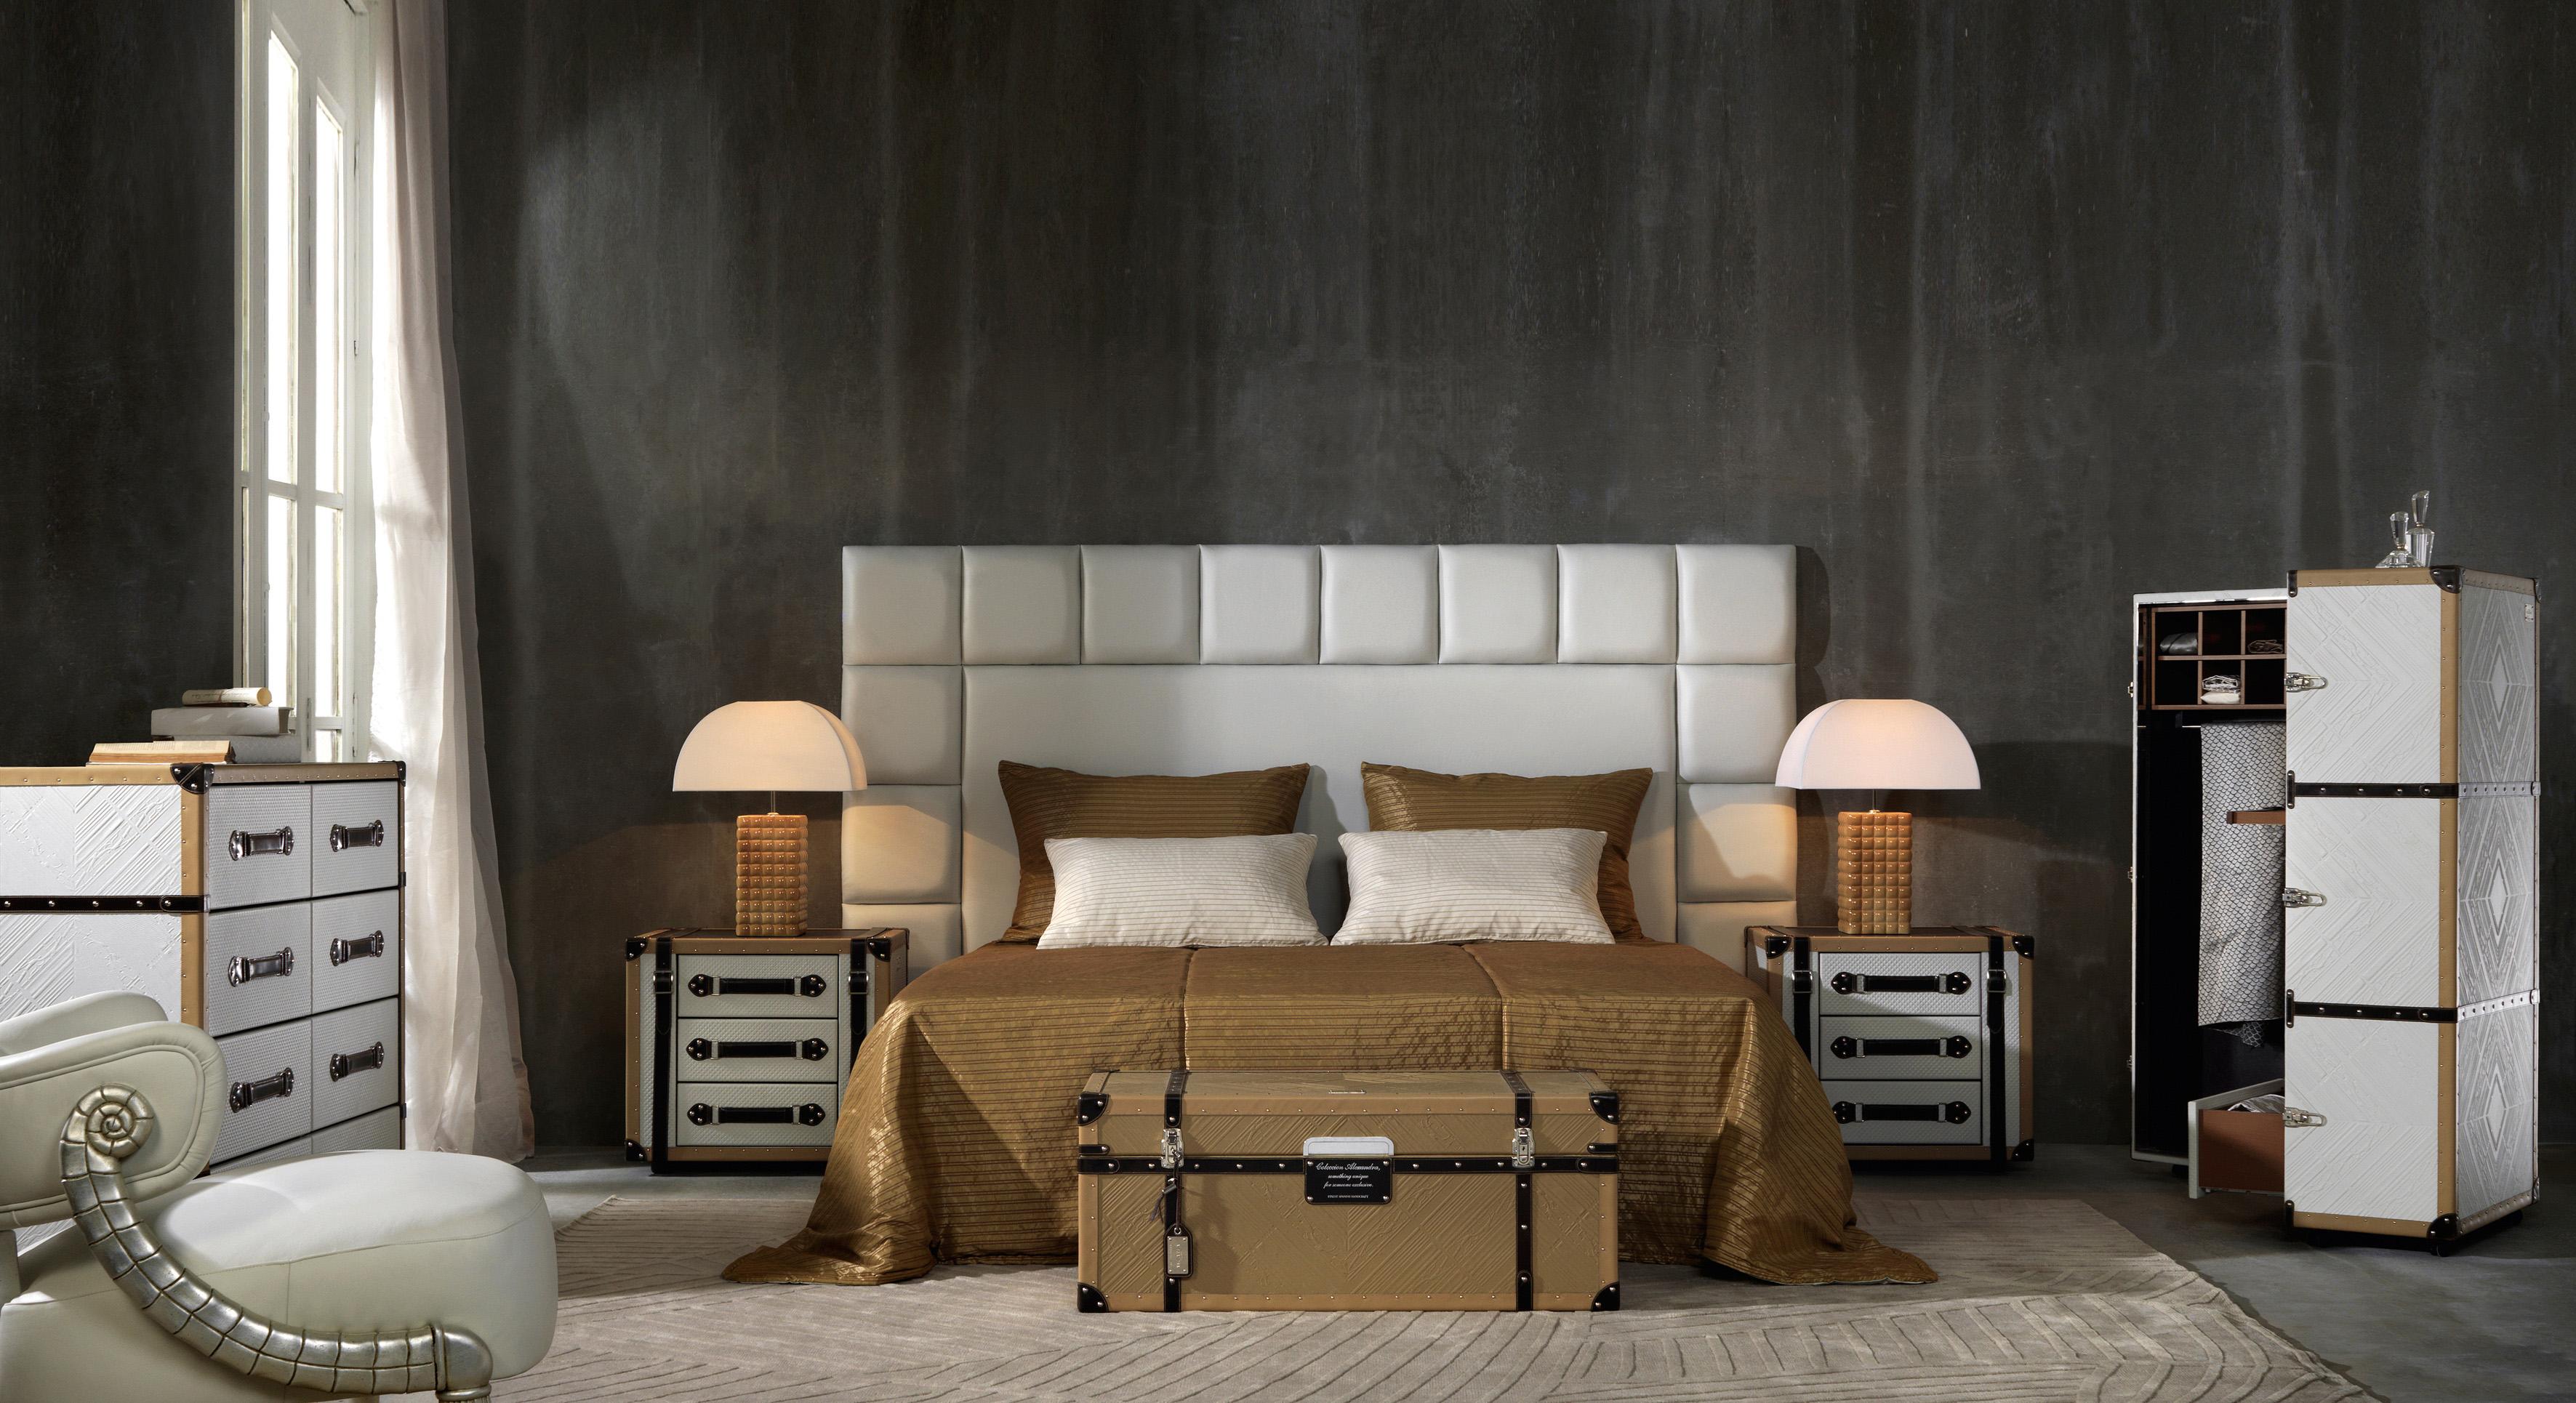 TRAVELER Schlafzimmer by ROOMERS Design Studio #bettwäsche #aufbewahrung #wandgestaltung #grauewandgestaltung #betthaupt #schlafzimmergestalten ©ROOMERS